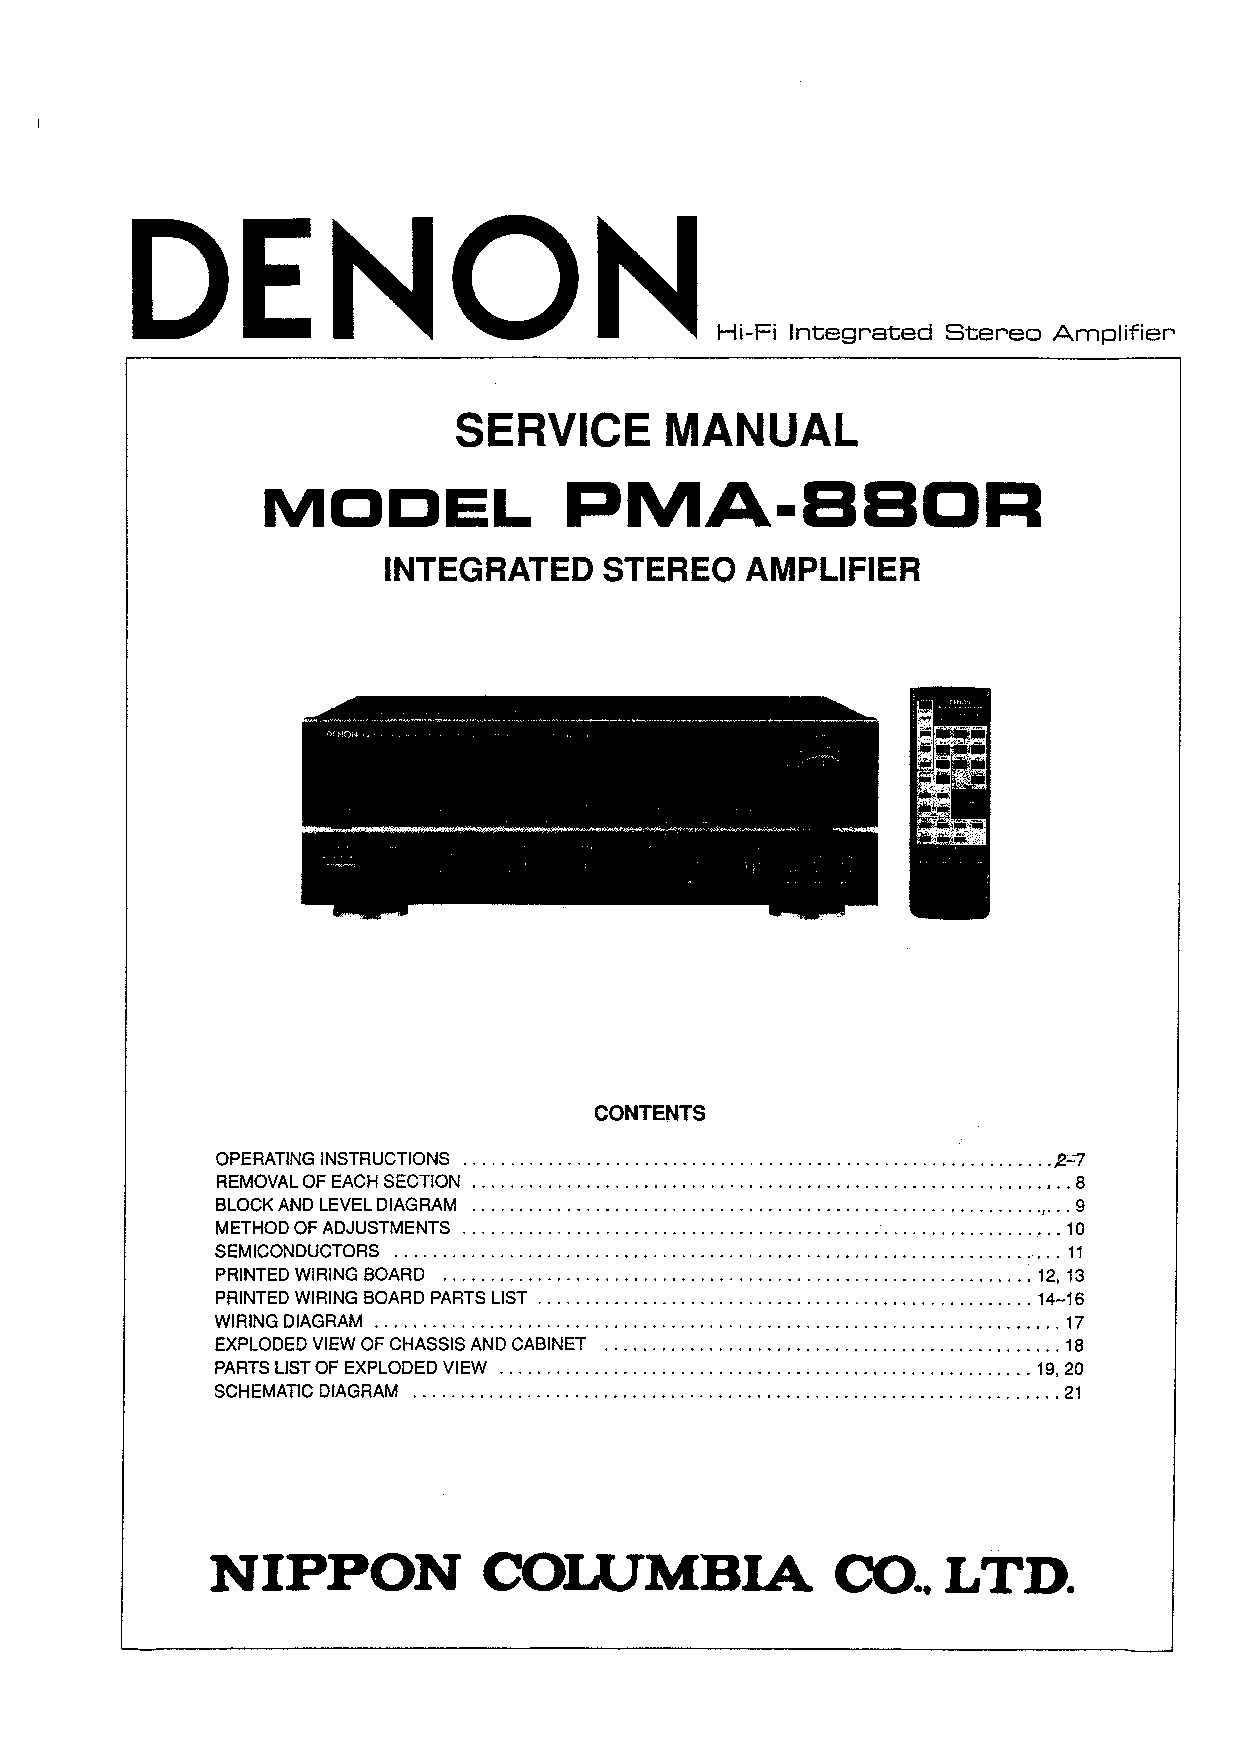 Denon PMA-880R Service Manual